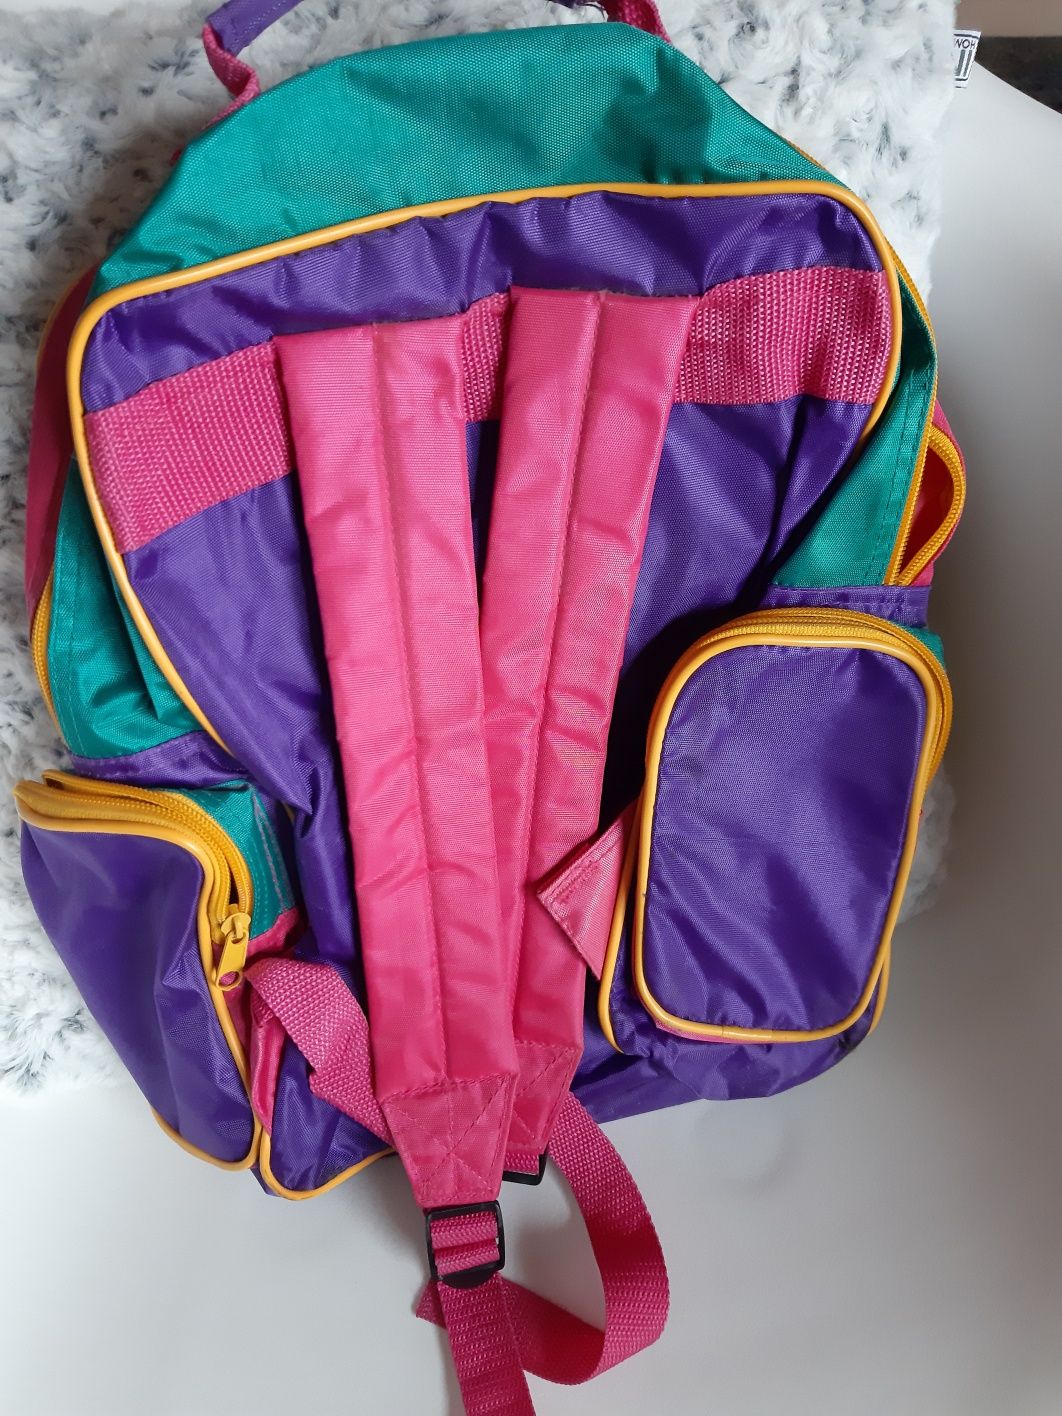 Plecak plecaczek misie kolory różowy tkmaxx kolekcja ikea home dziewcz